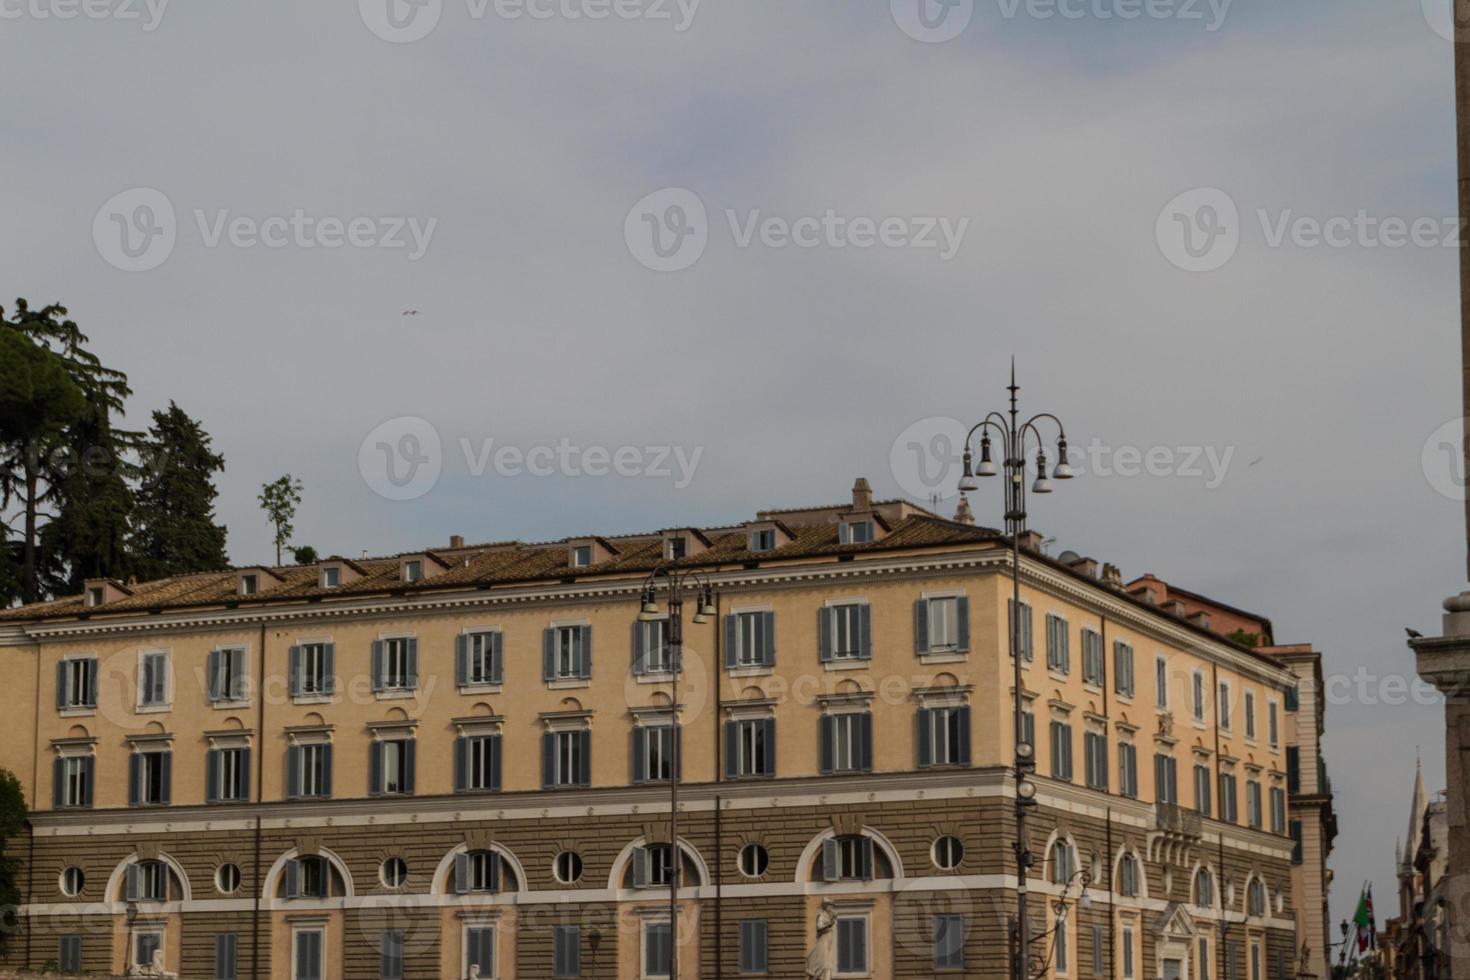 Piazza del Popolo in Rome photo